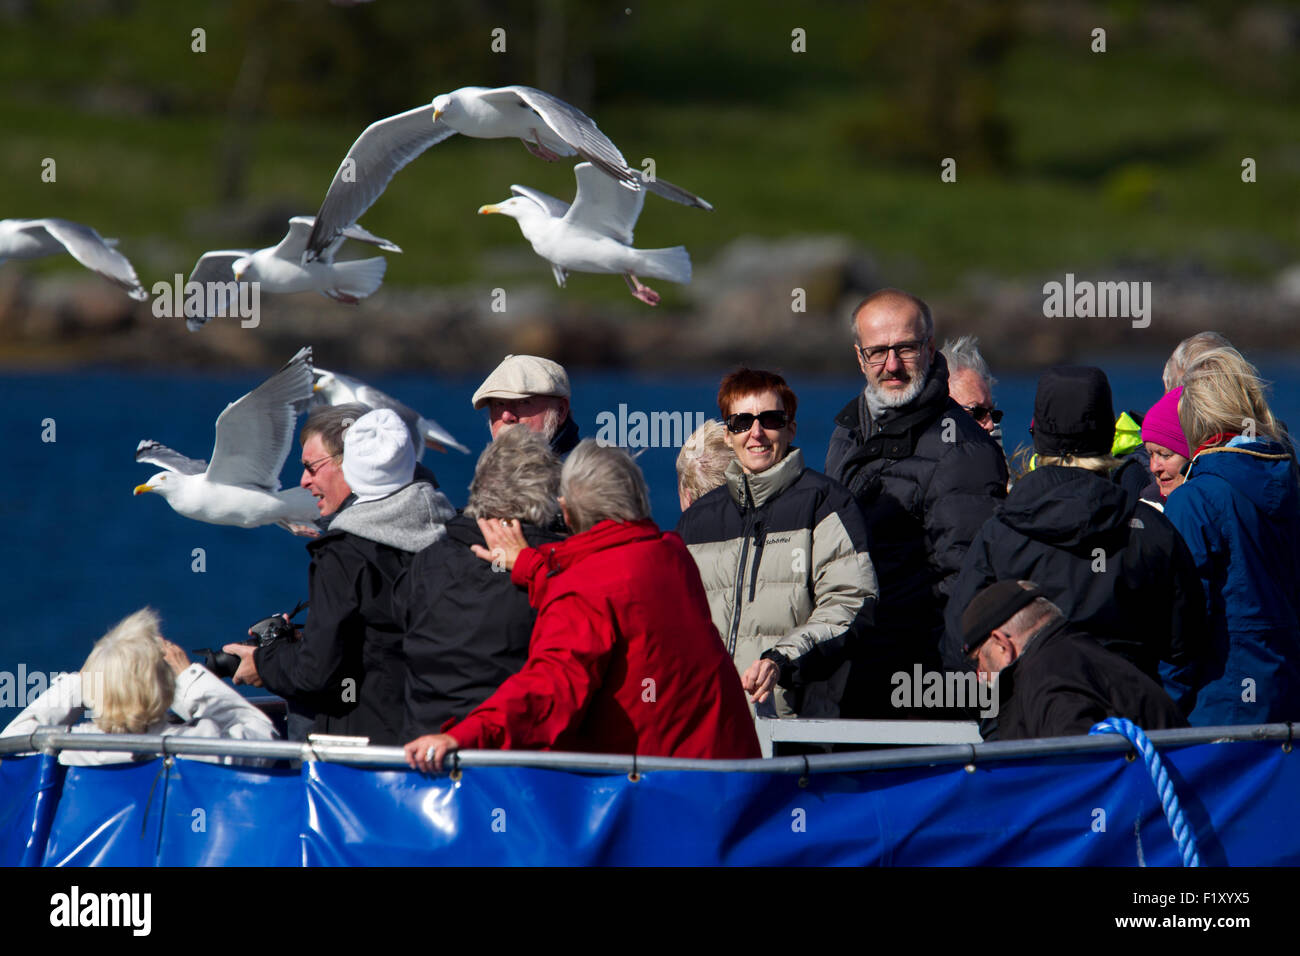 Beaucoup de touristes sur un bateau dans les Lofoten en Norvège Banque D'Images